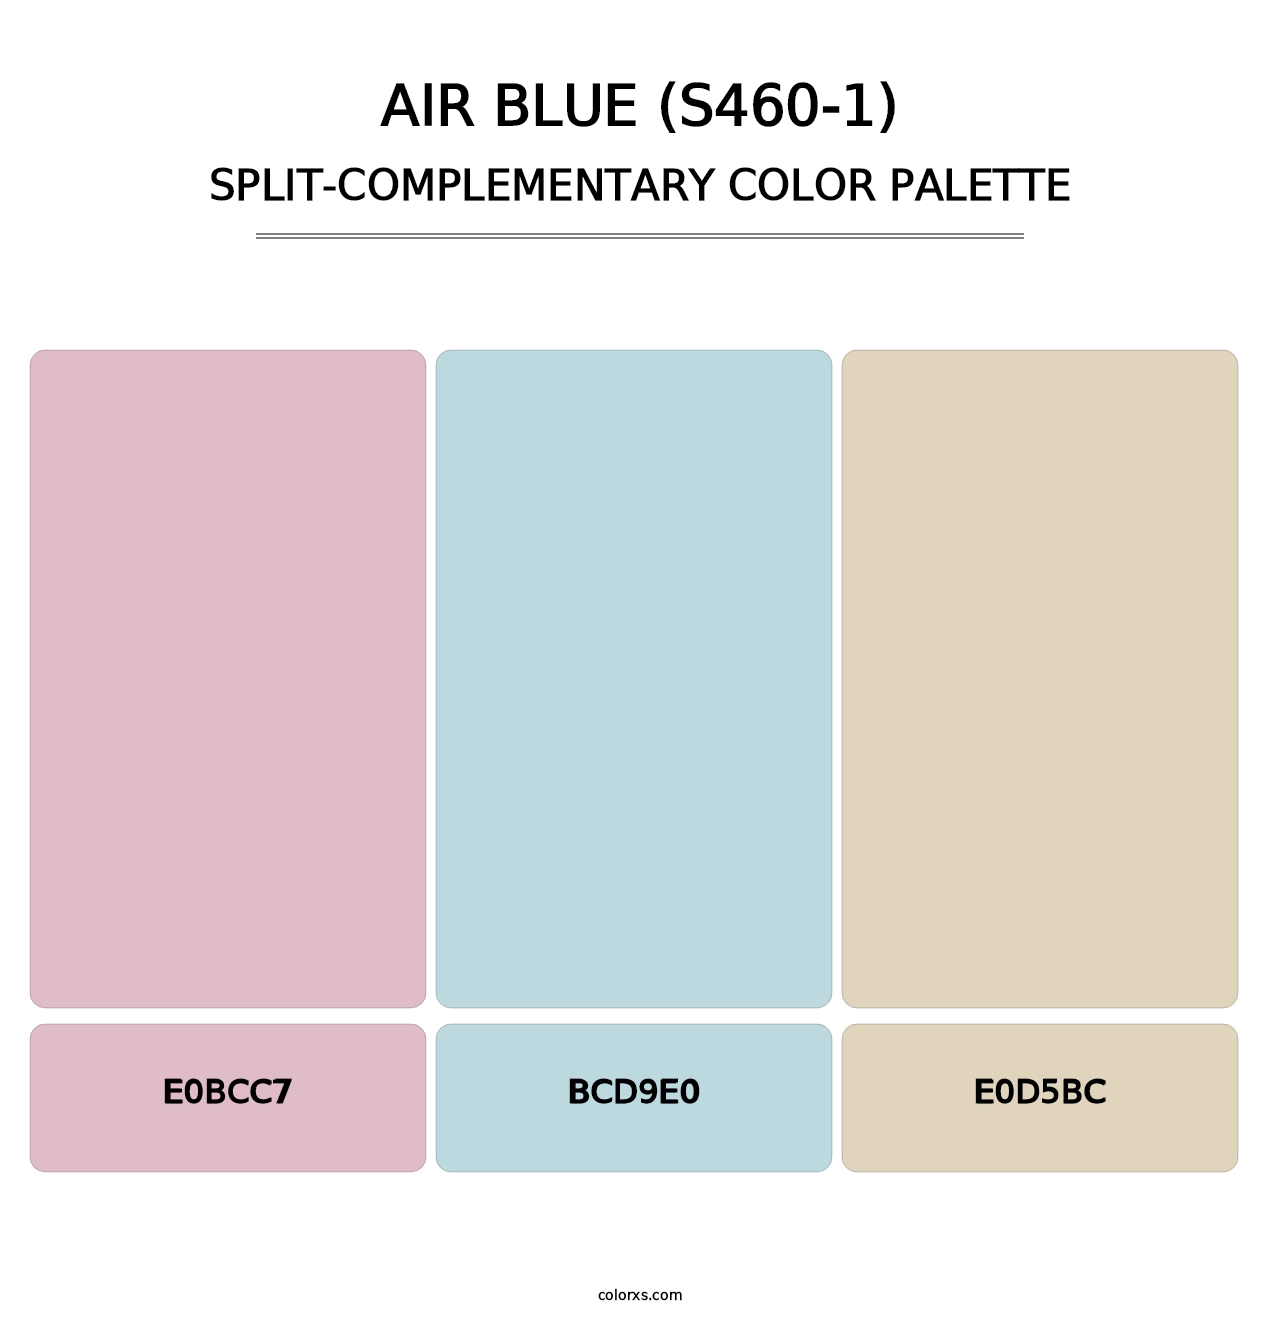 Air Blue (S460-1) - Split-Complementary Color Palette